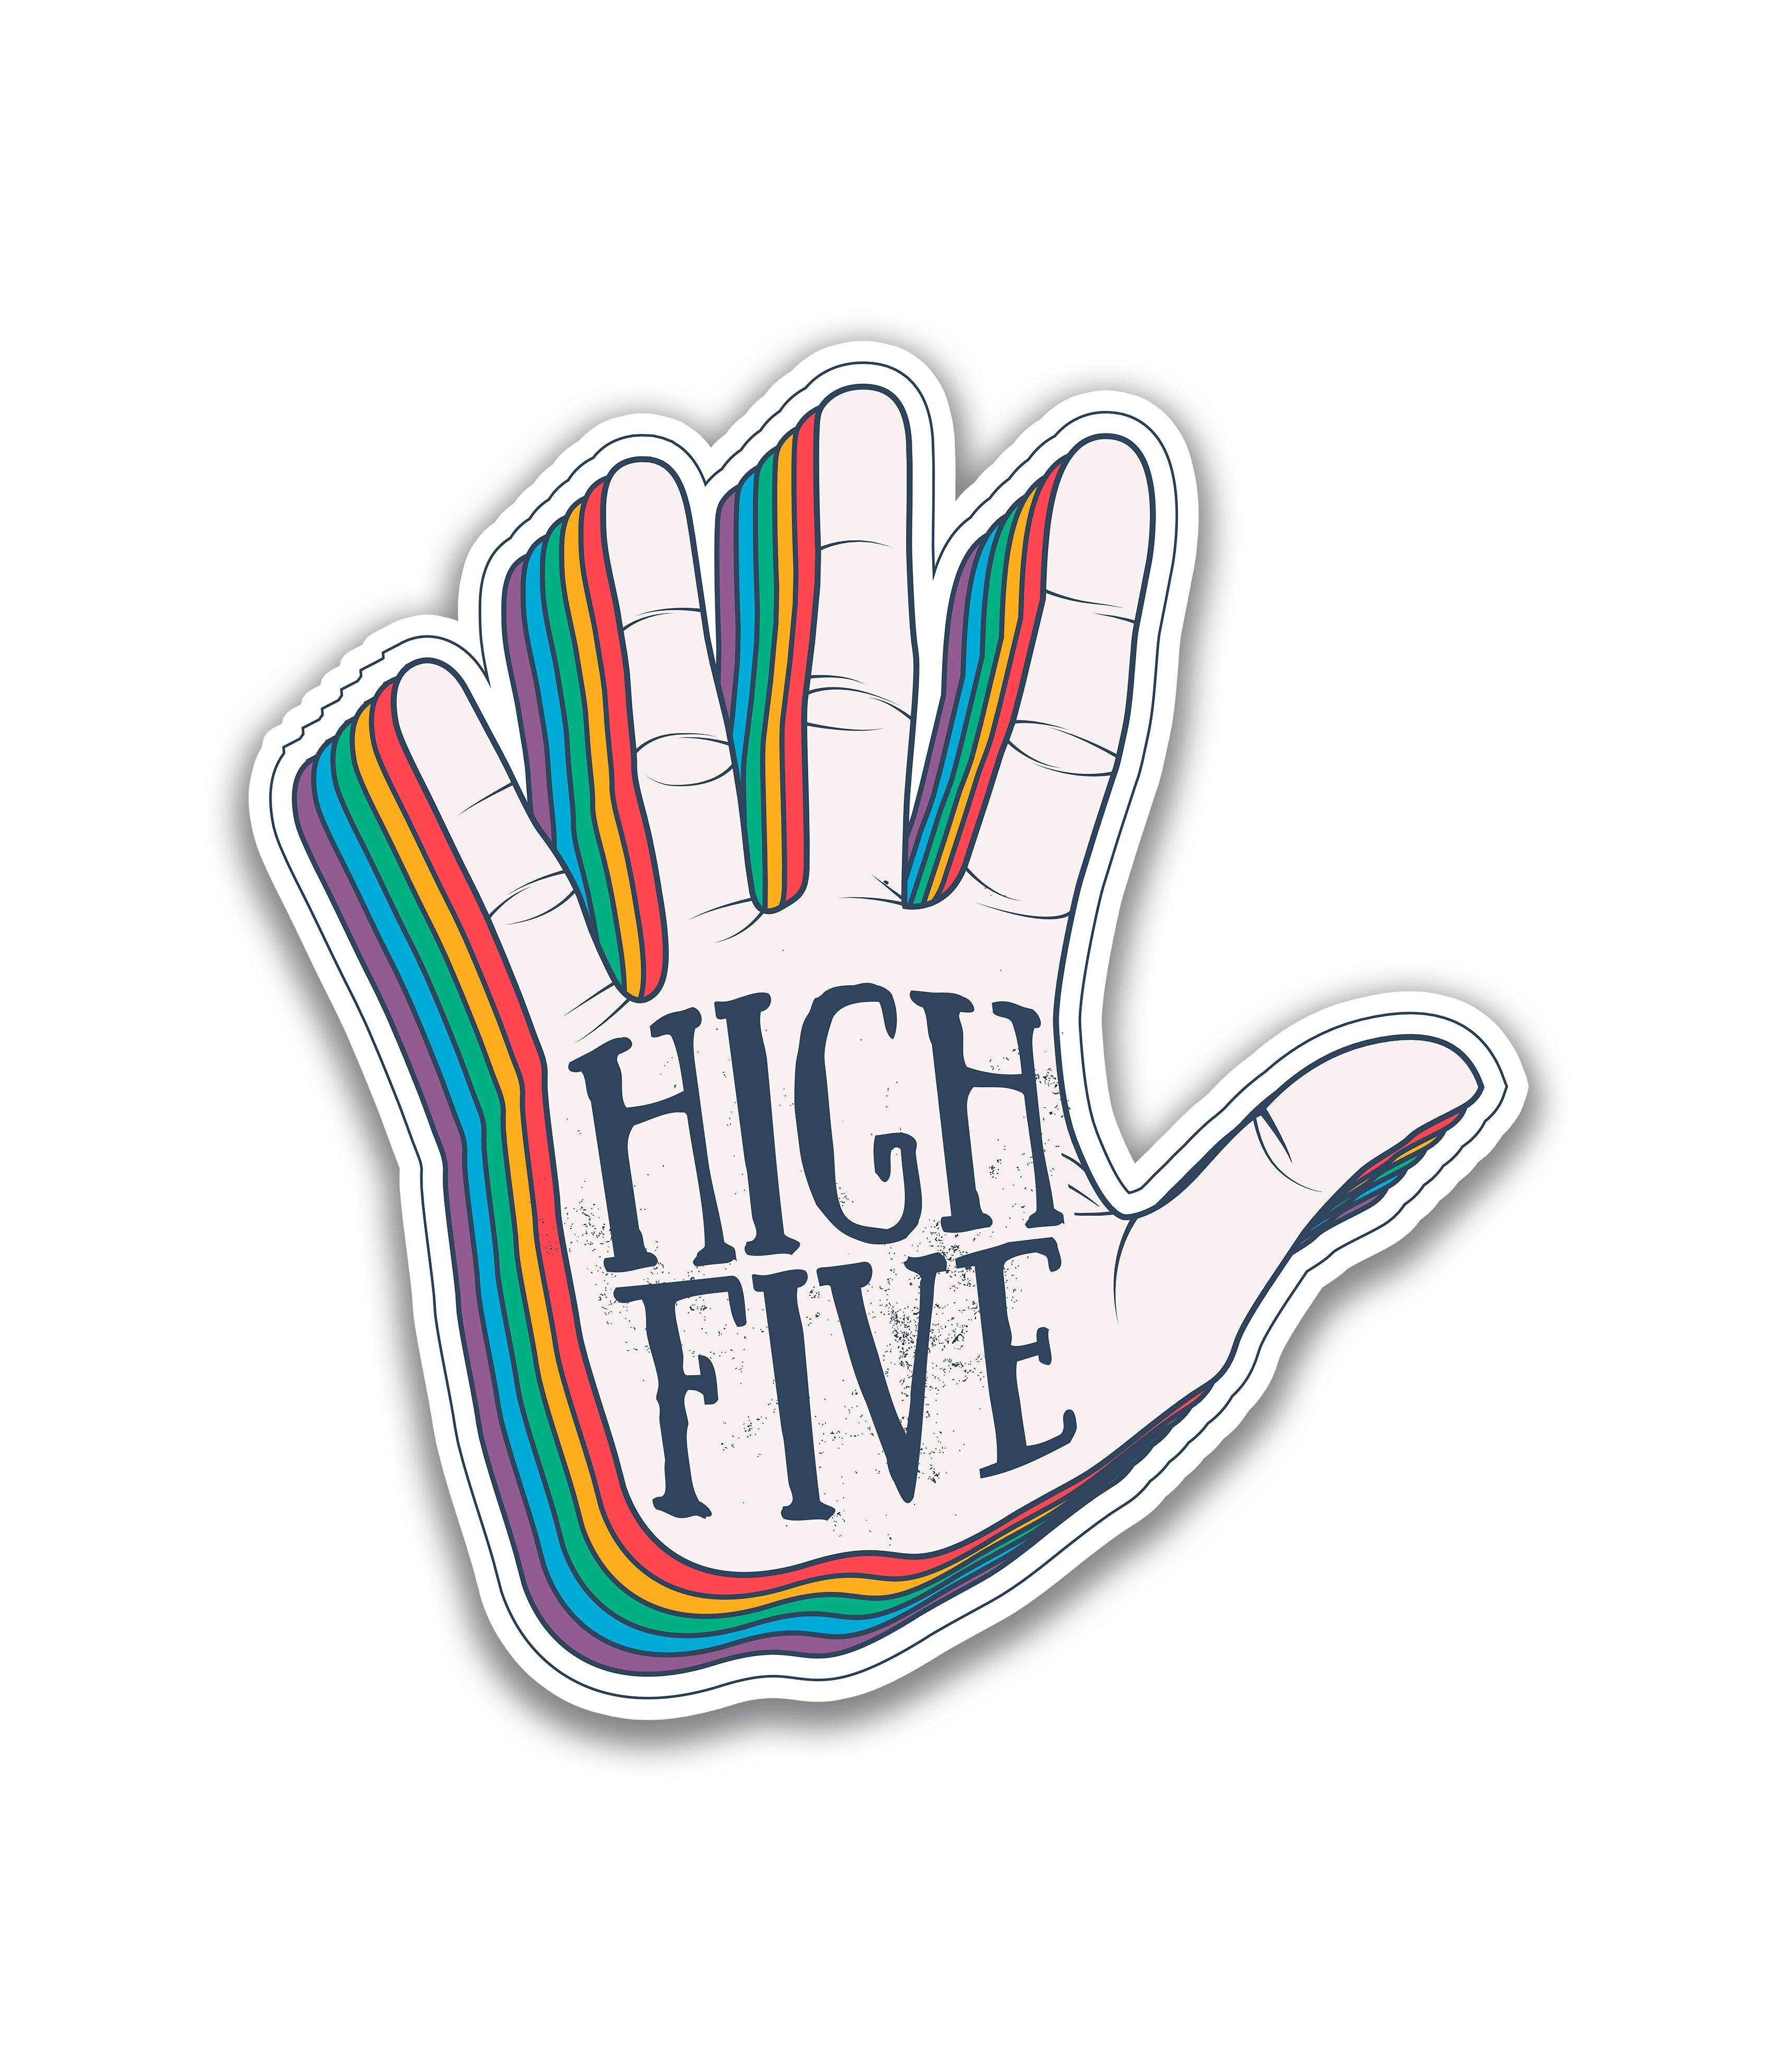 High Five - Rei do Sticker